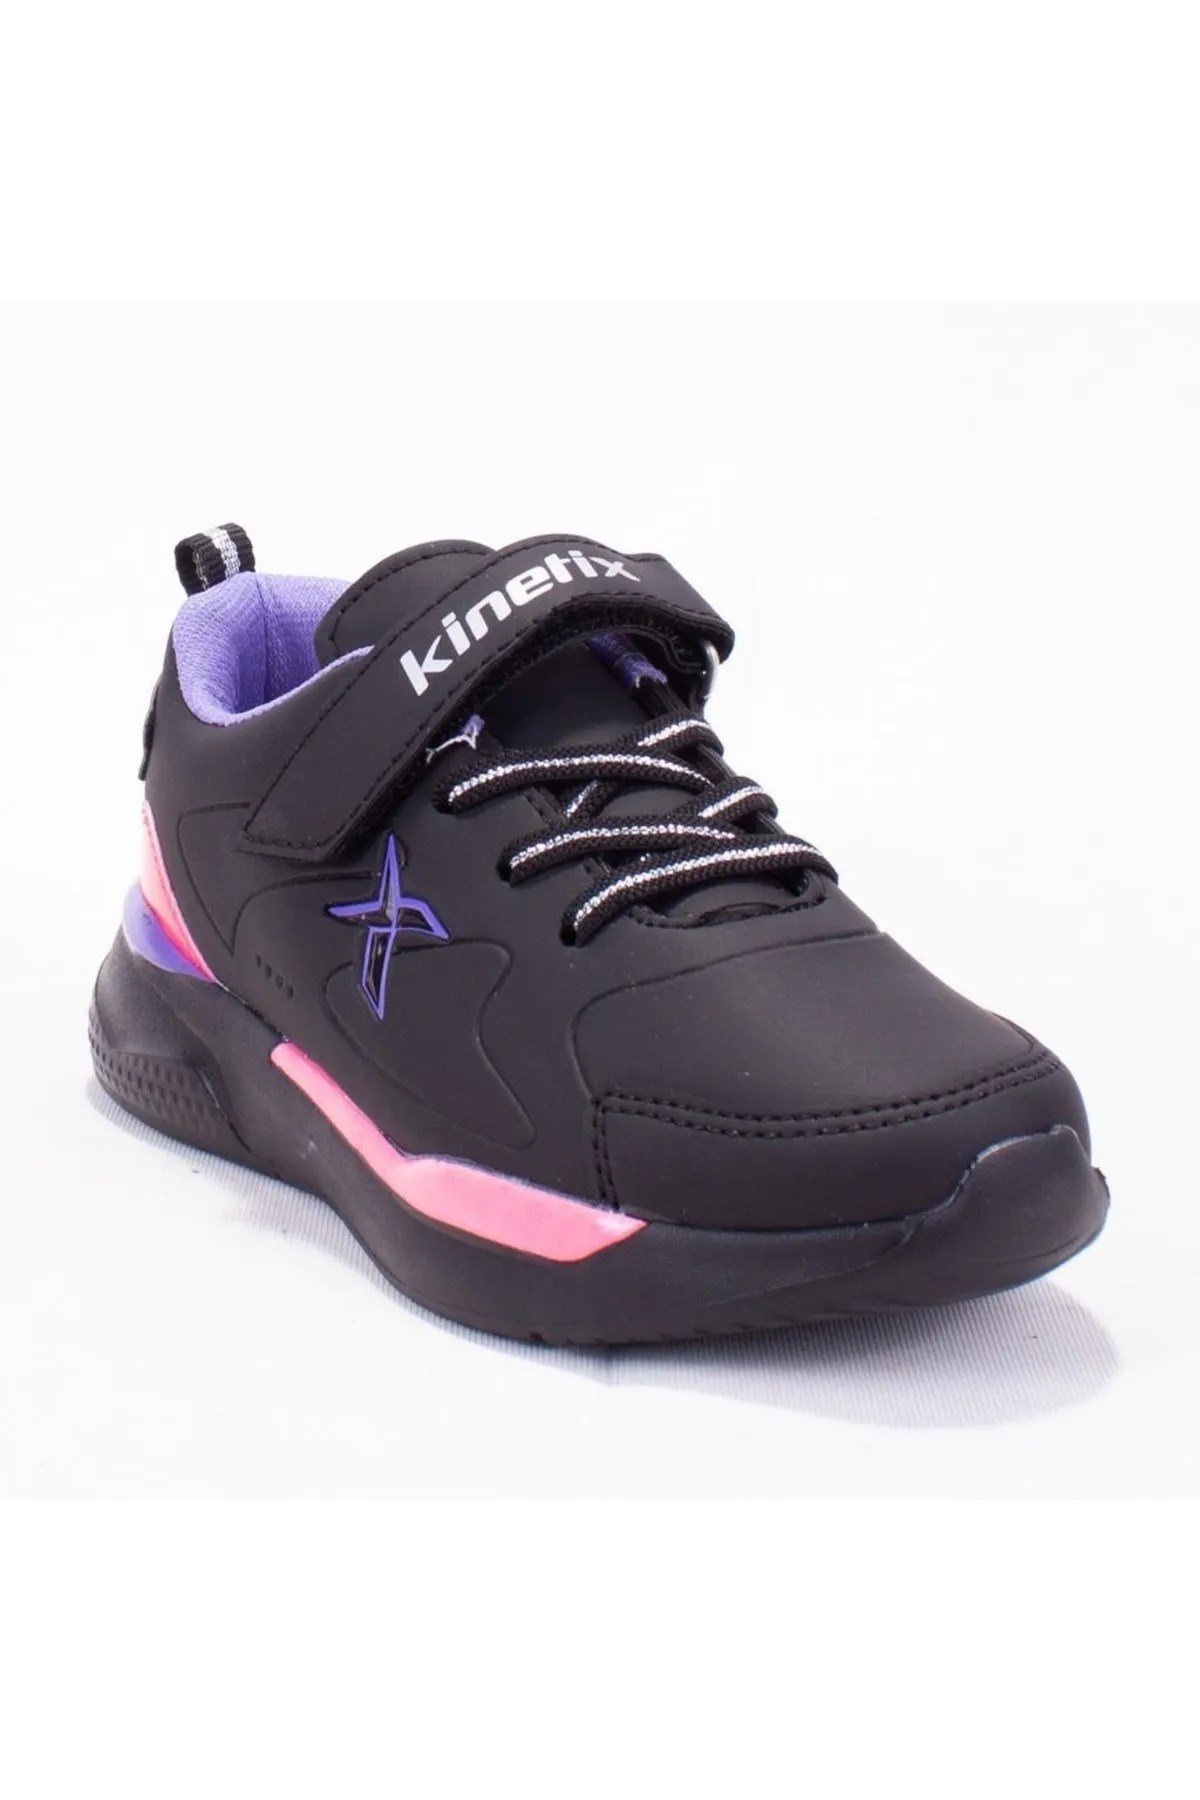 Kinetix Felıx 2F FELIX PU 2PR Sıyah Kız Çocuk Spor Ayakkabı - Markahit